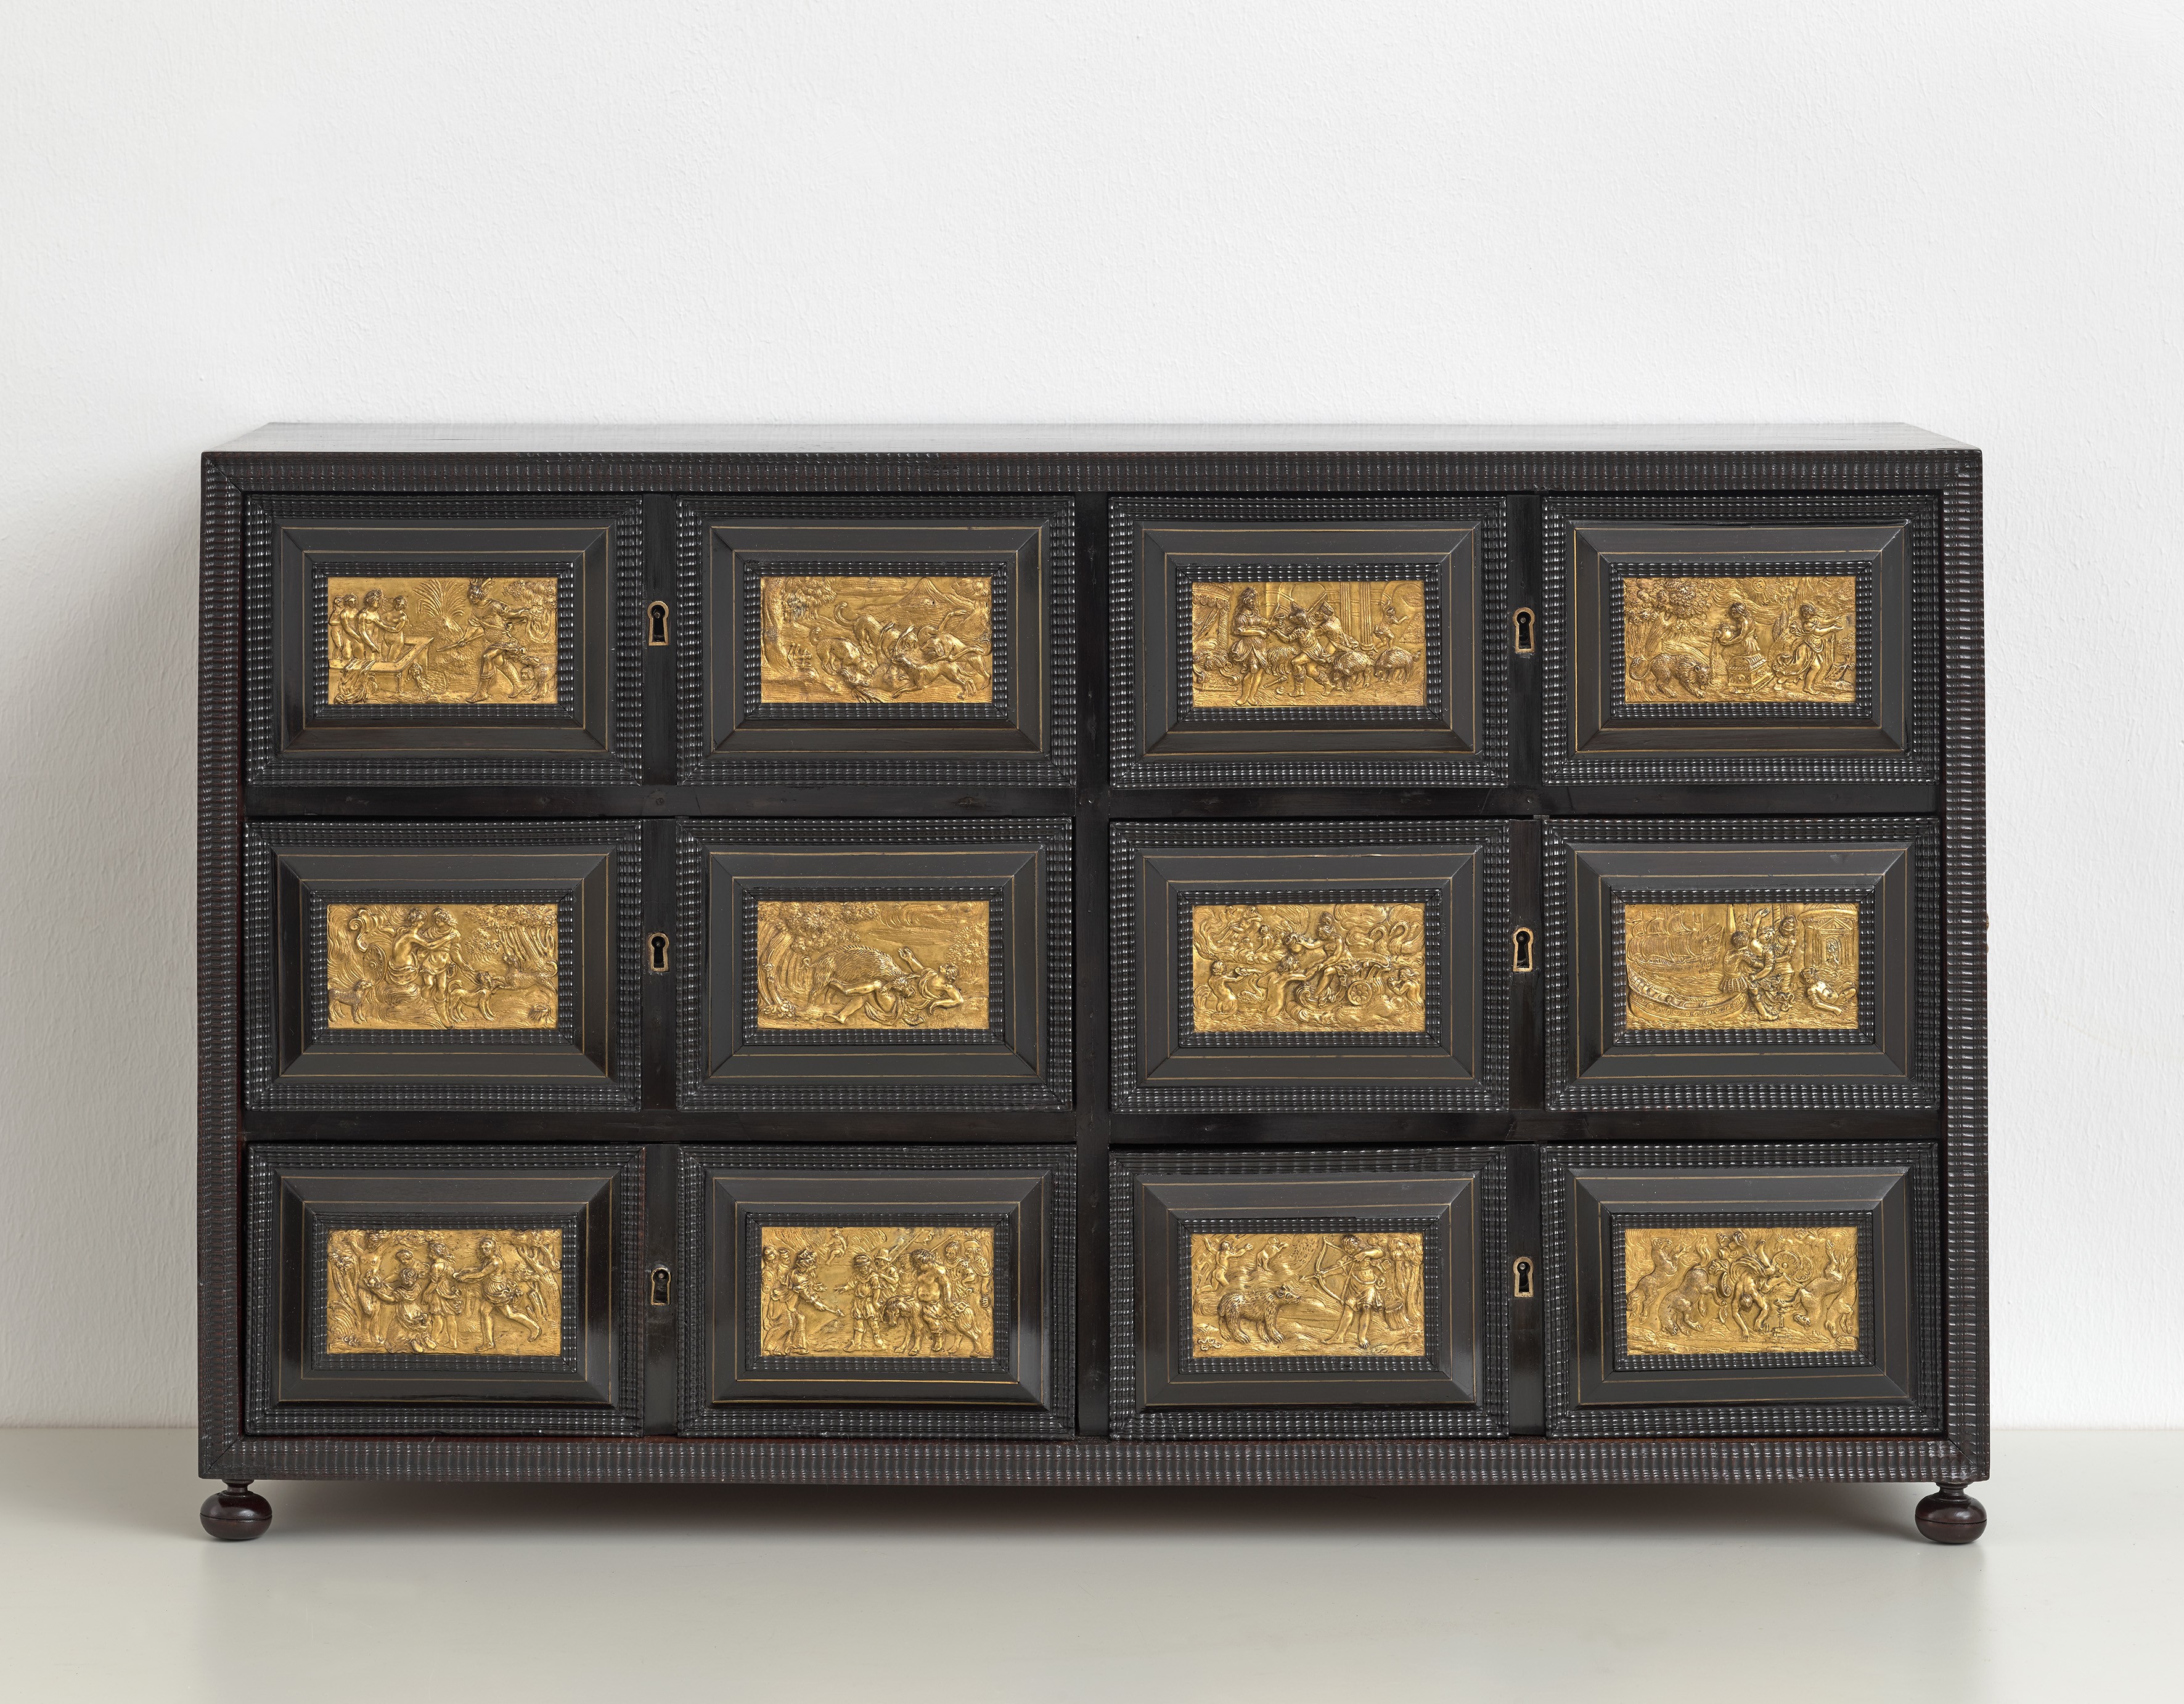 Kabinettschrank mit Motiven nach Virgil Soli, Süddeutschland, 2. Hälfte 17. Jahrhundert (Städtisches Museum Schloss Rheydt CC BY)